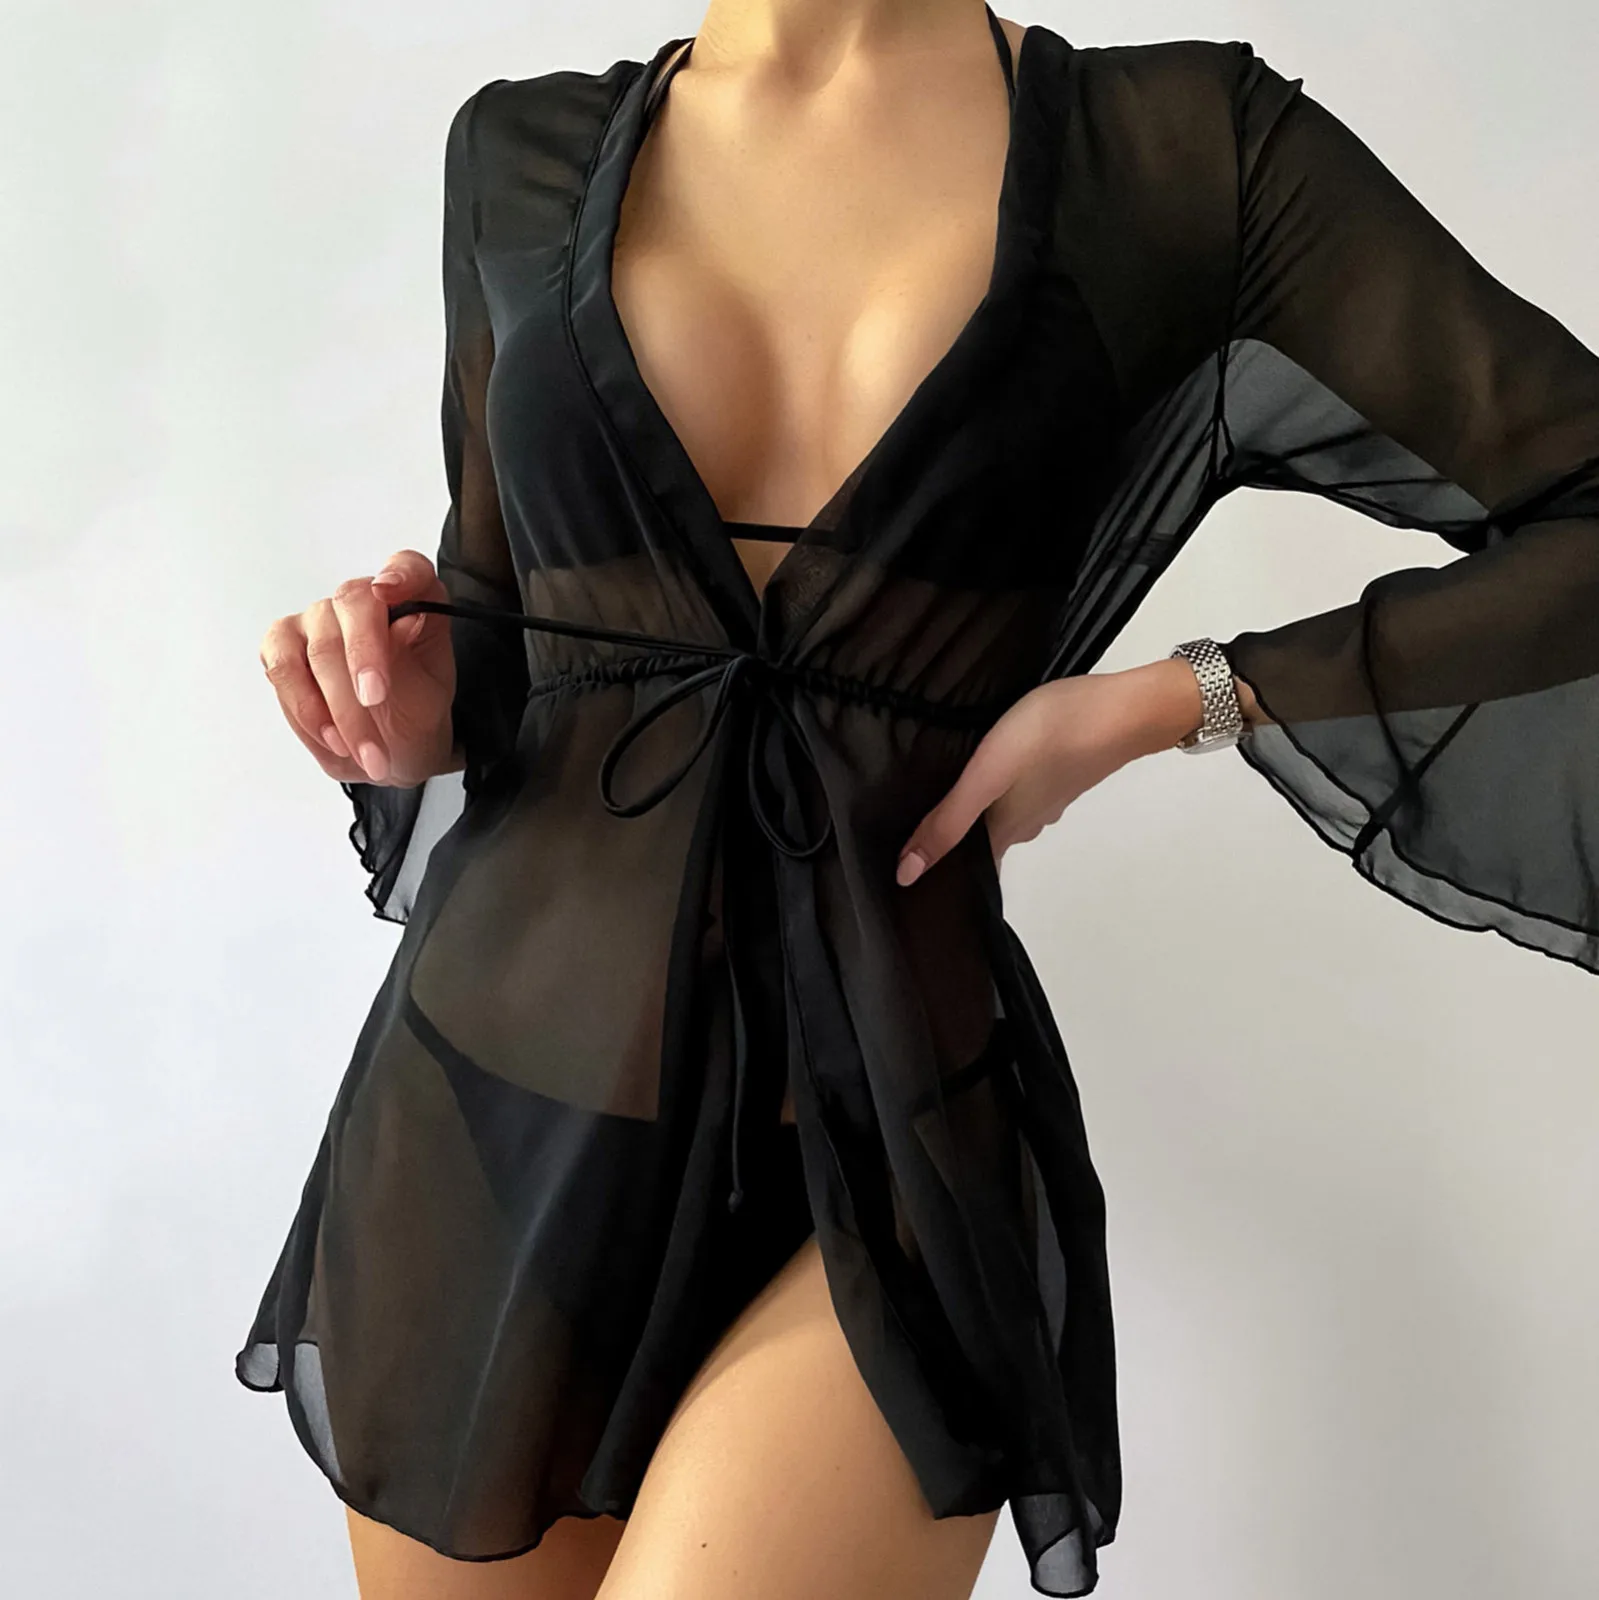 2022 Summer Women Black Chiffon Kimono Beach Cardigan Sheer Cover Up Swimwear Long Blouse Shirts Female Tops Tunic Shirt